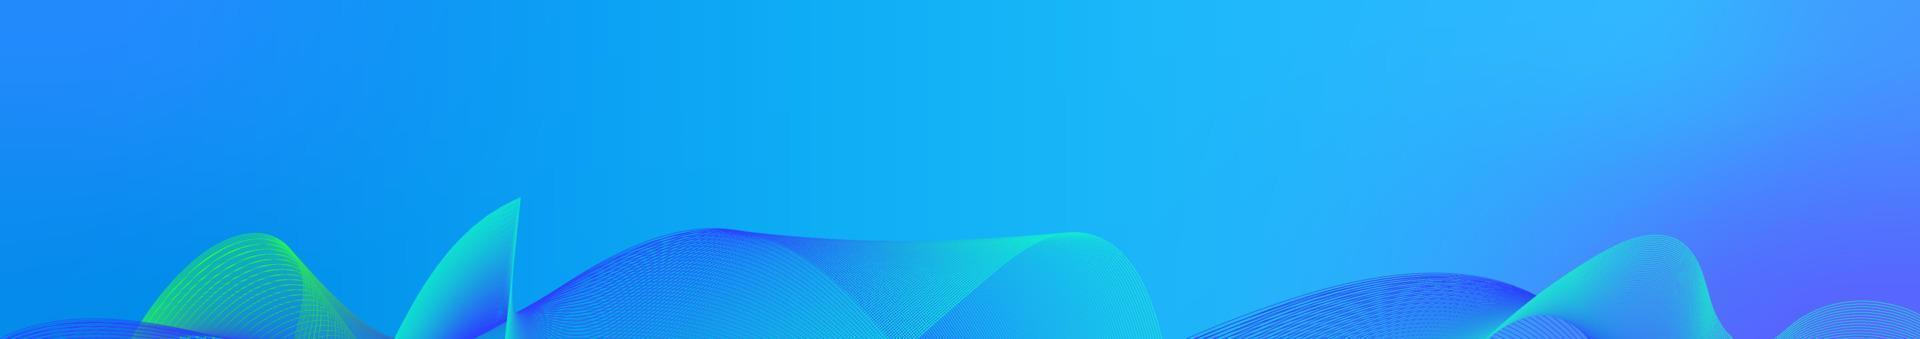 horizontaal blauw abstract achtergrond. golvend lijnen onder. vector voorraad illustratie van een abstract achtergrond met leeg ruimte.